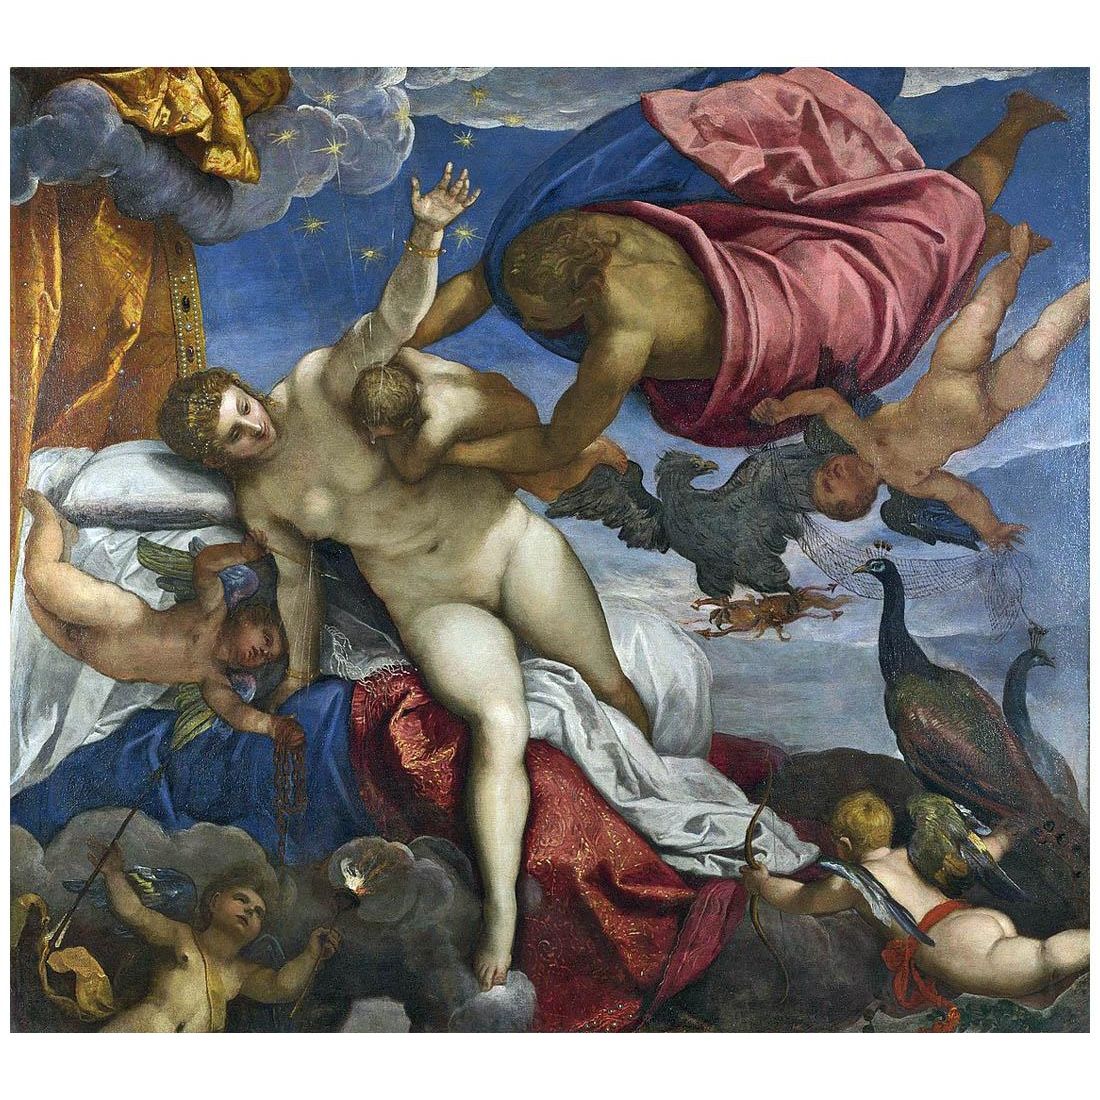 Tintoretto. L’Origine della Via Lattea. 1575. National Gallery, London